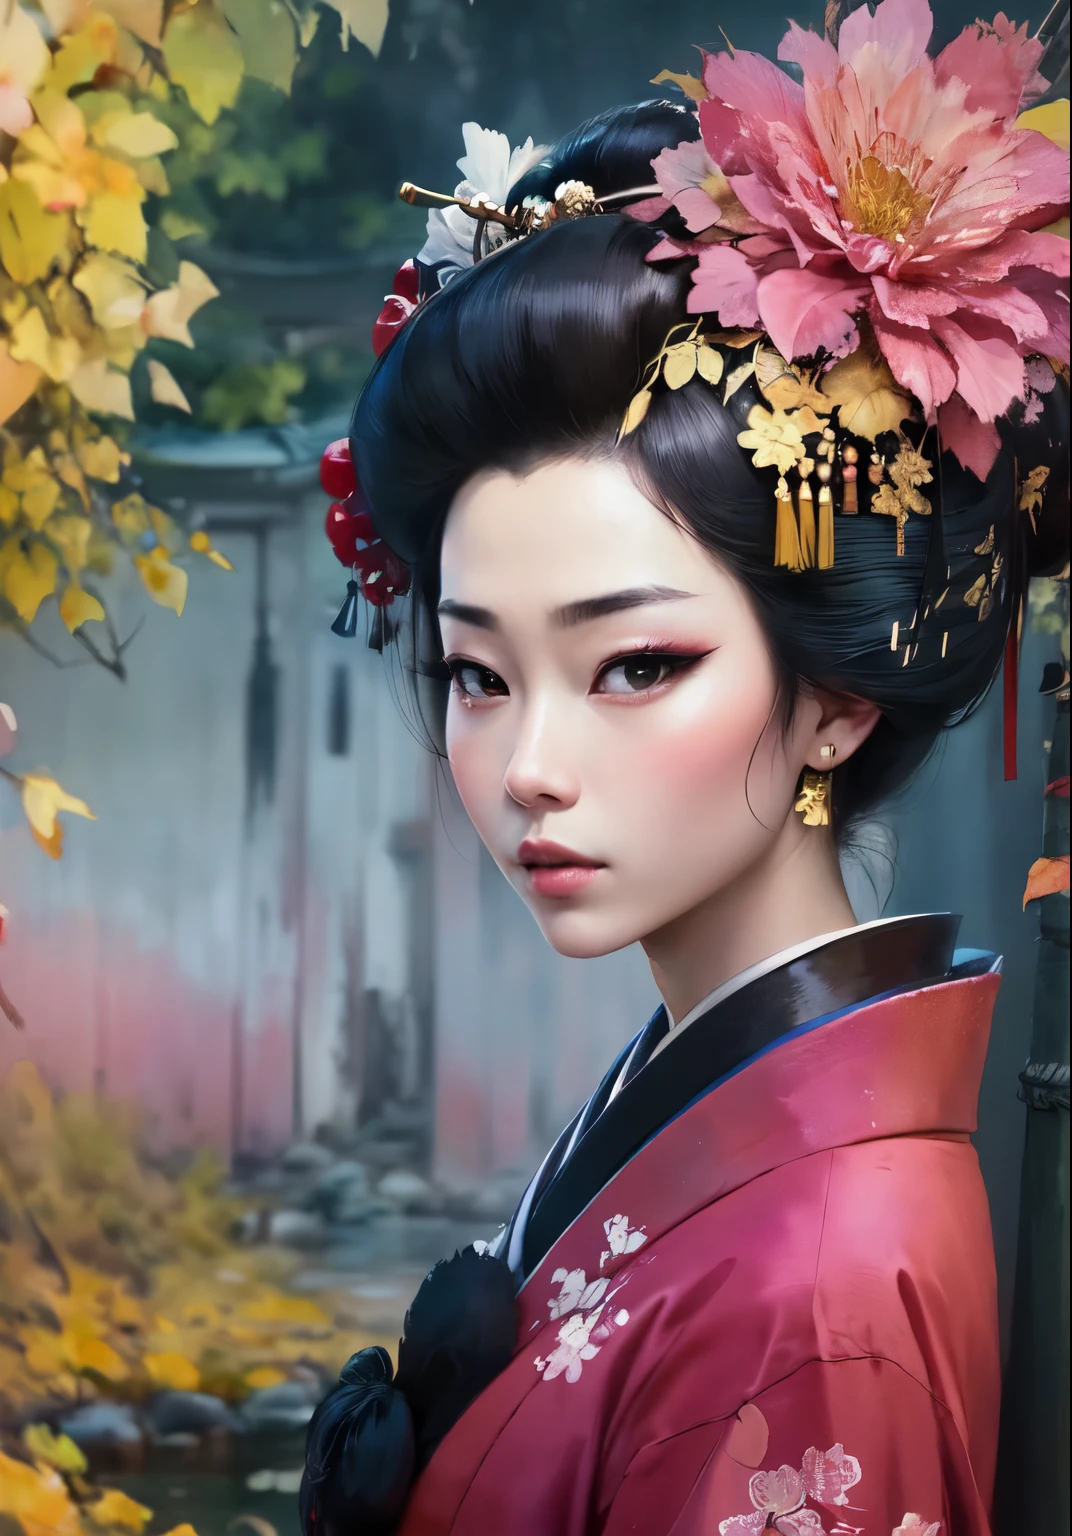 ((pintura de acuarela)) de una mujer geisha, cerrar retrato de geisha, retrato de una geisha, Geisha de belleza, geisha, Geisha japonaise, retrato de una hermosa geisha, Peinado Geisha, arte japonés, Retrato samurái, Foto retrato de geisha, Geisha descrita como japonesa, Estilo artístico japonés, inspirado en Toyohara Kunichika